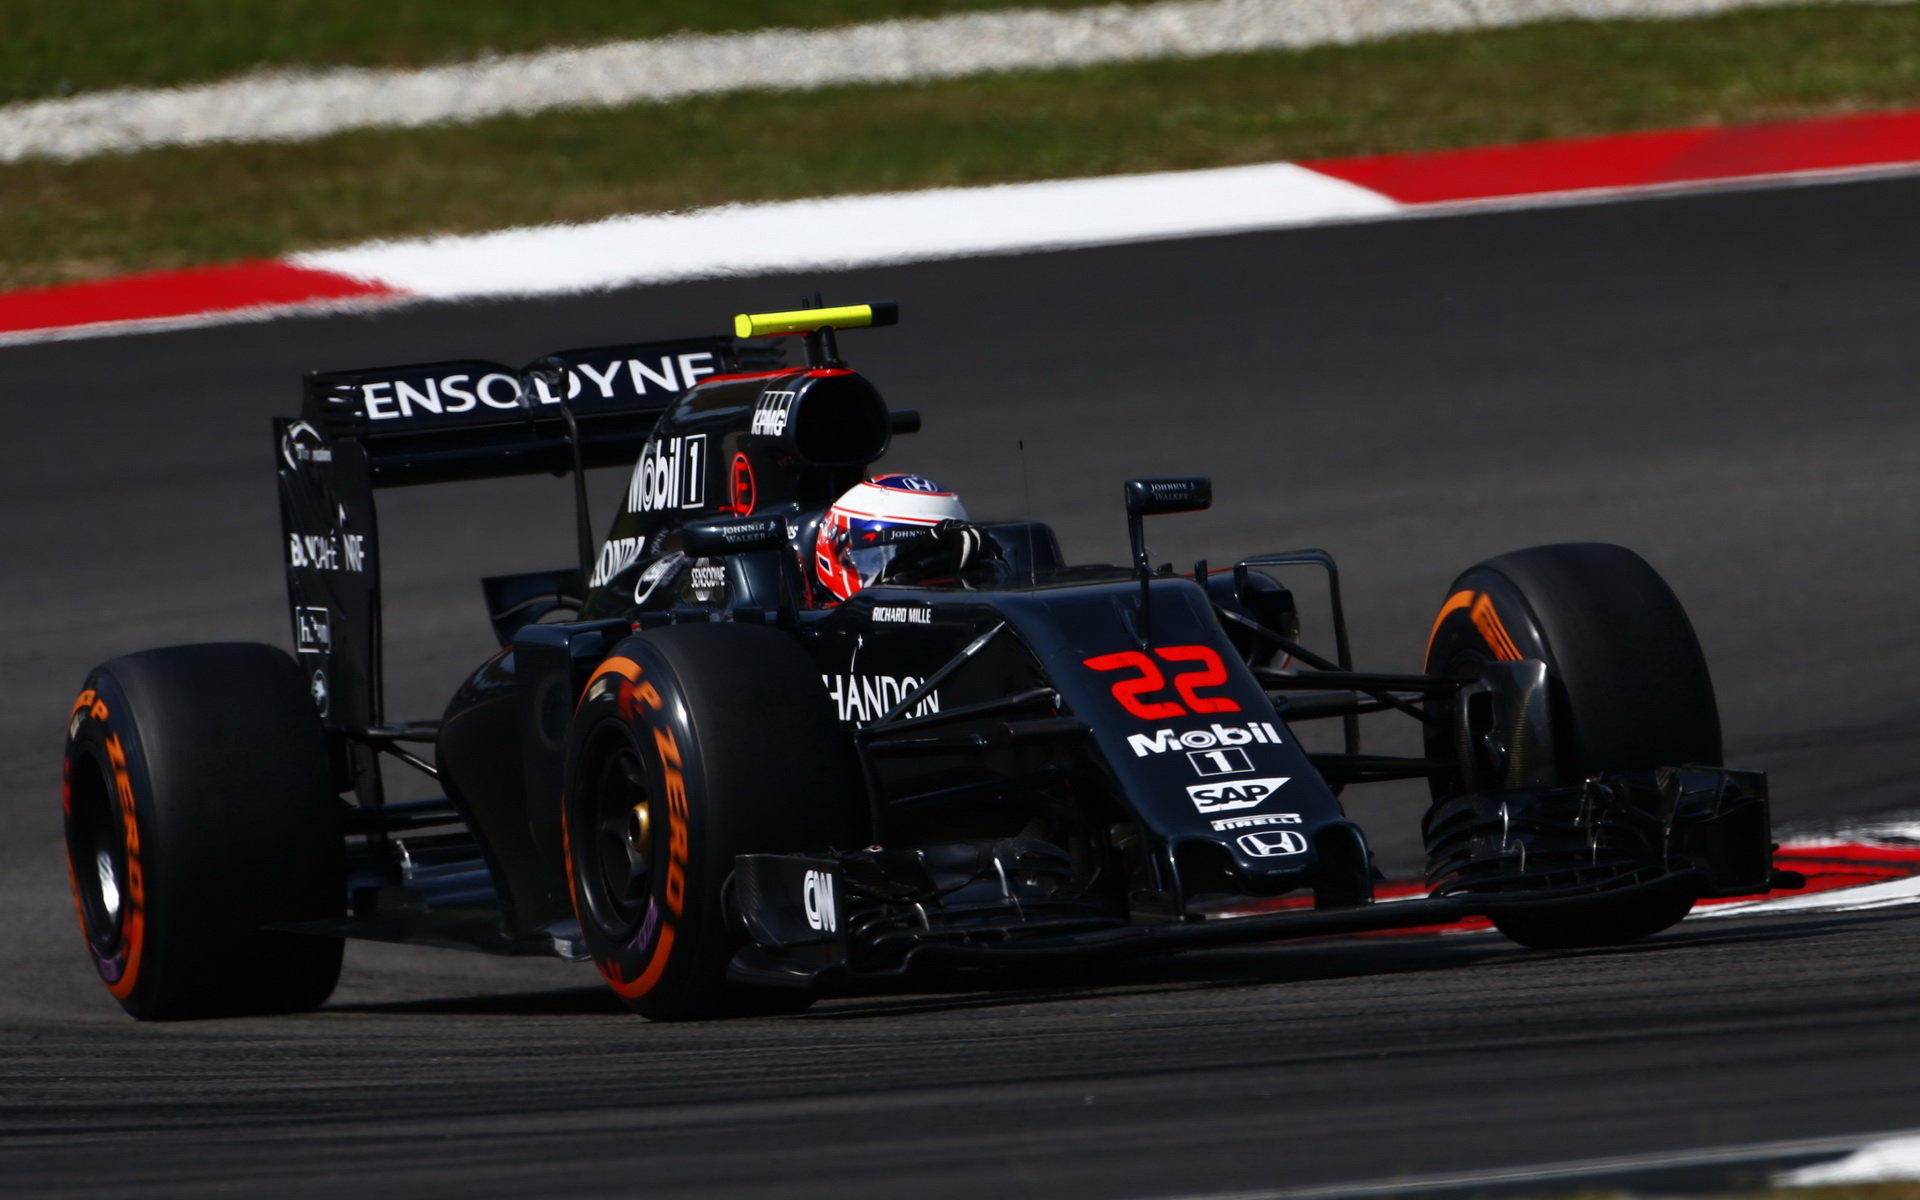 Jenson Button v závodě v Malajsii